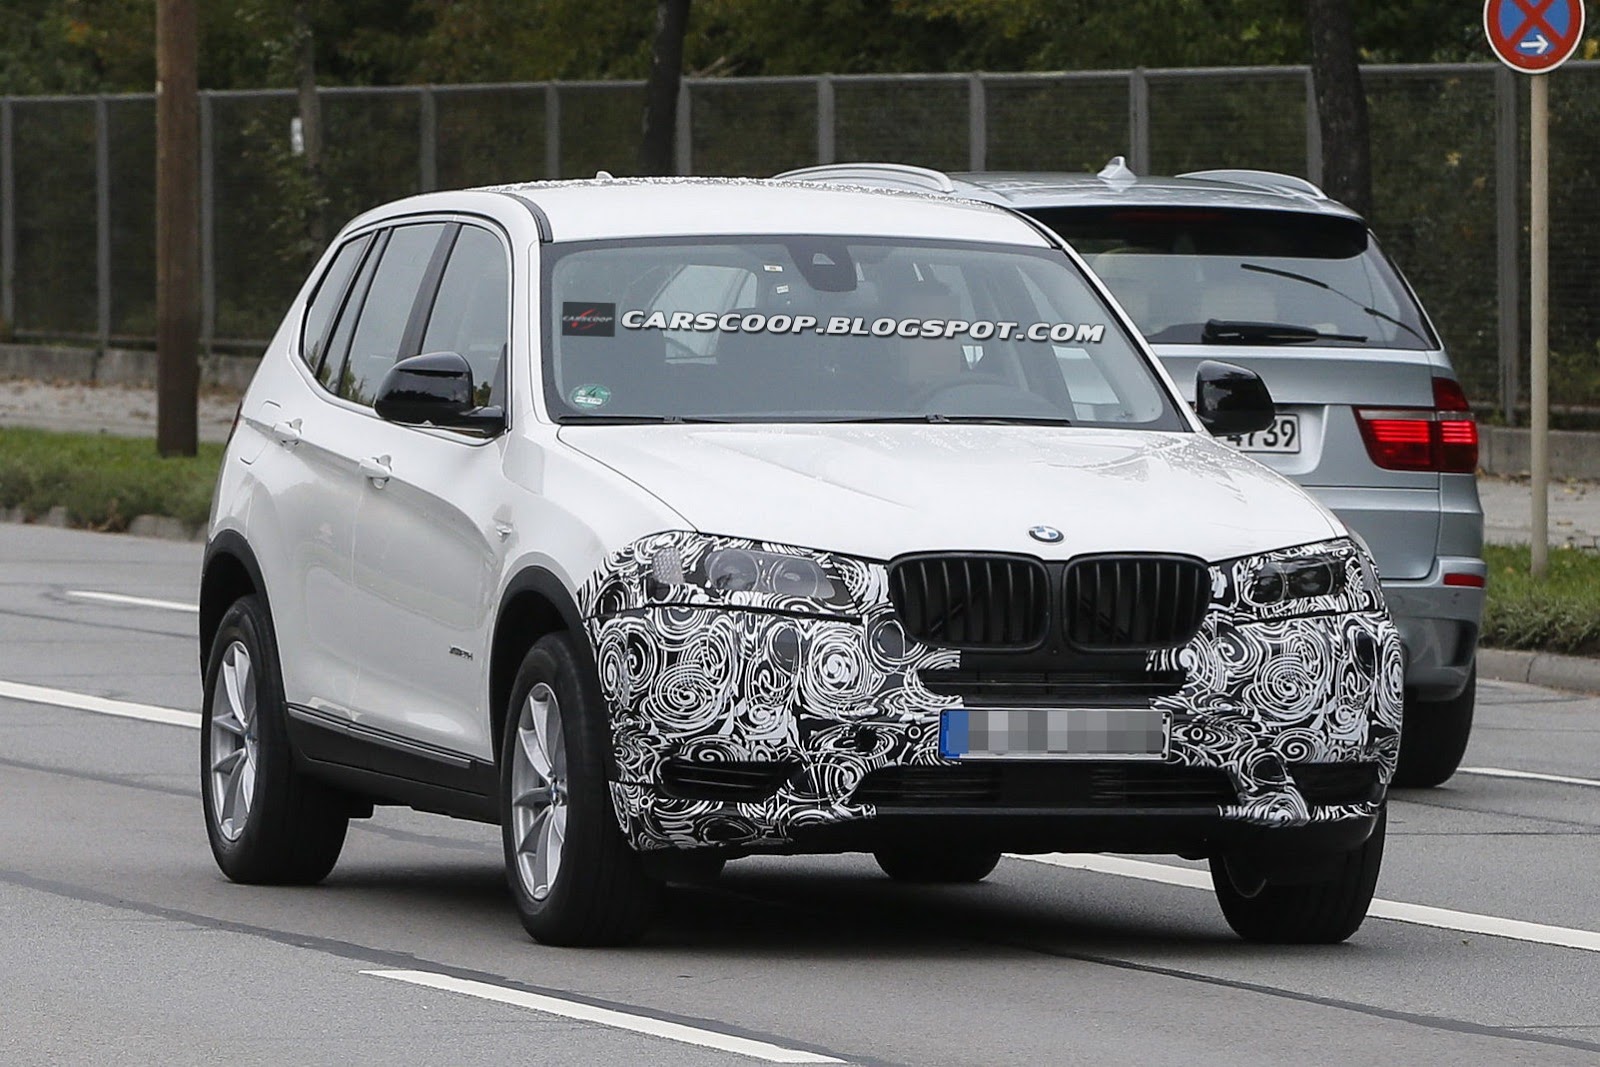 BMW X3 Crossover Spy Shots: